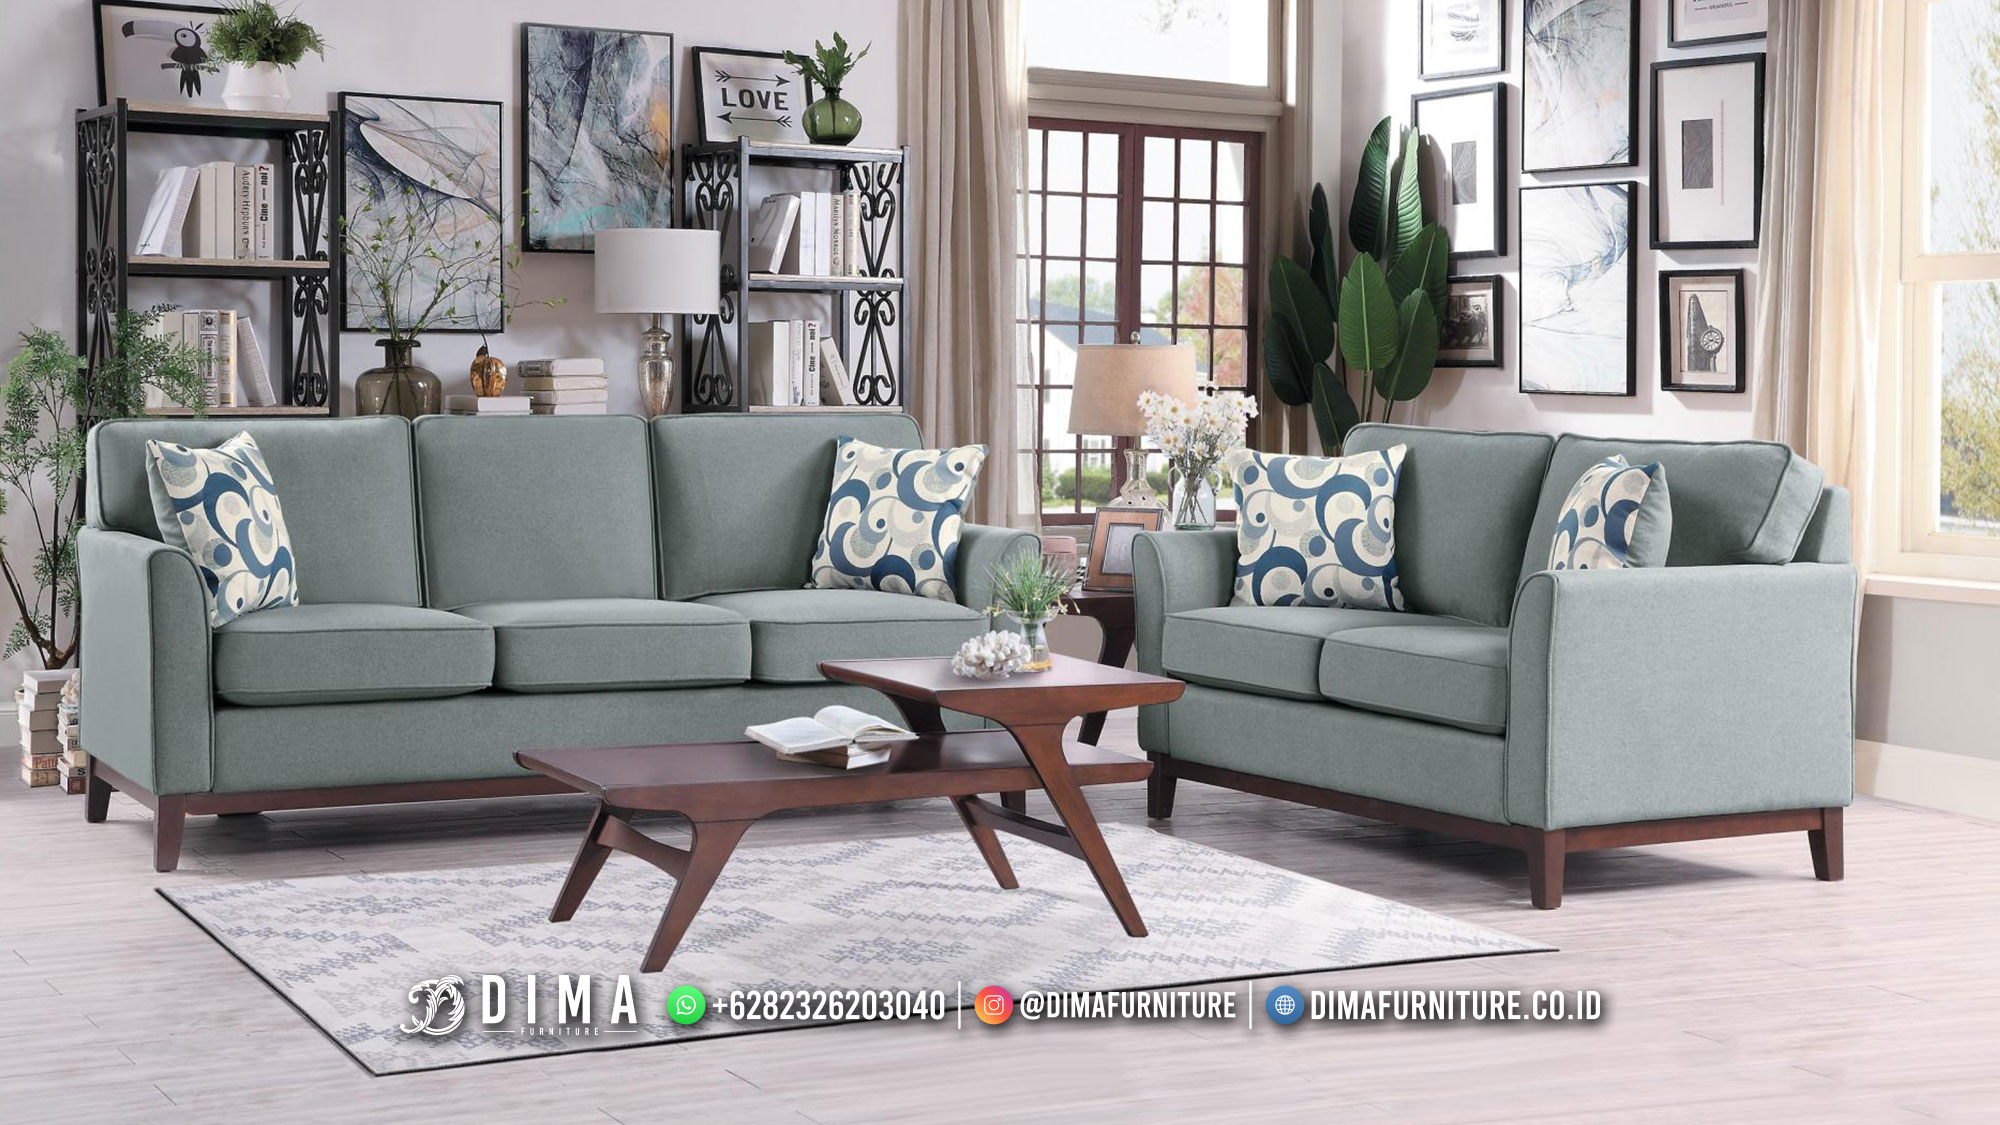 Toko Mebel Jual Set Sofa Minimalis Kursi Ruang Tamu Terlaris DF-2420